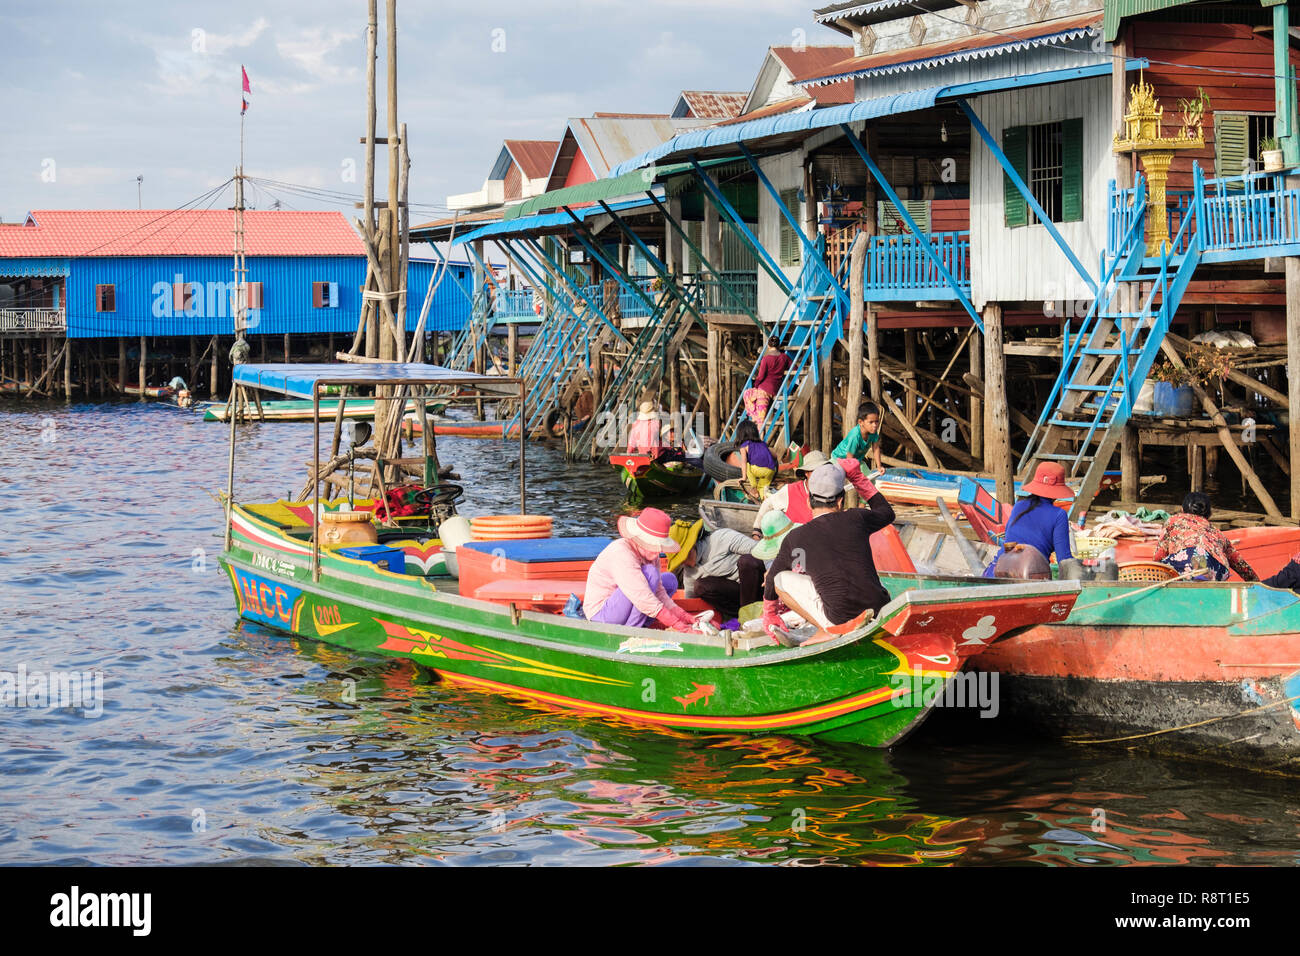 La popolazione locale nelle barche in vendita di merci al di fuori di case su palafitte in villaggio galleggiante nel lago Tonle Sap. Kampong Phluk Siem Reap Cambogia Indocina Asia Foto Stock